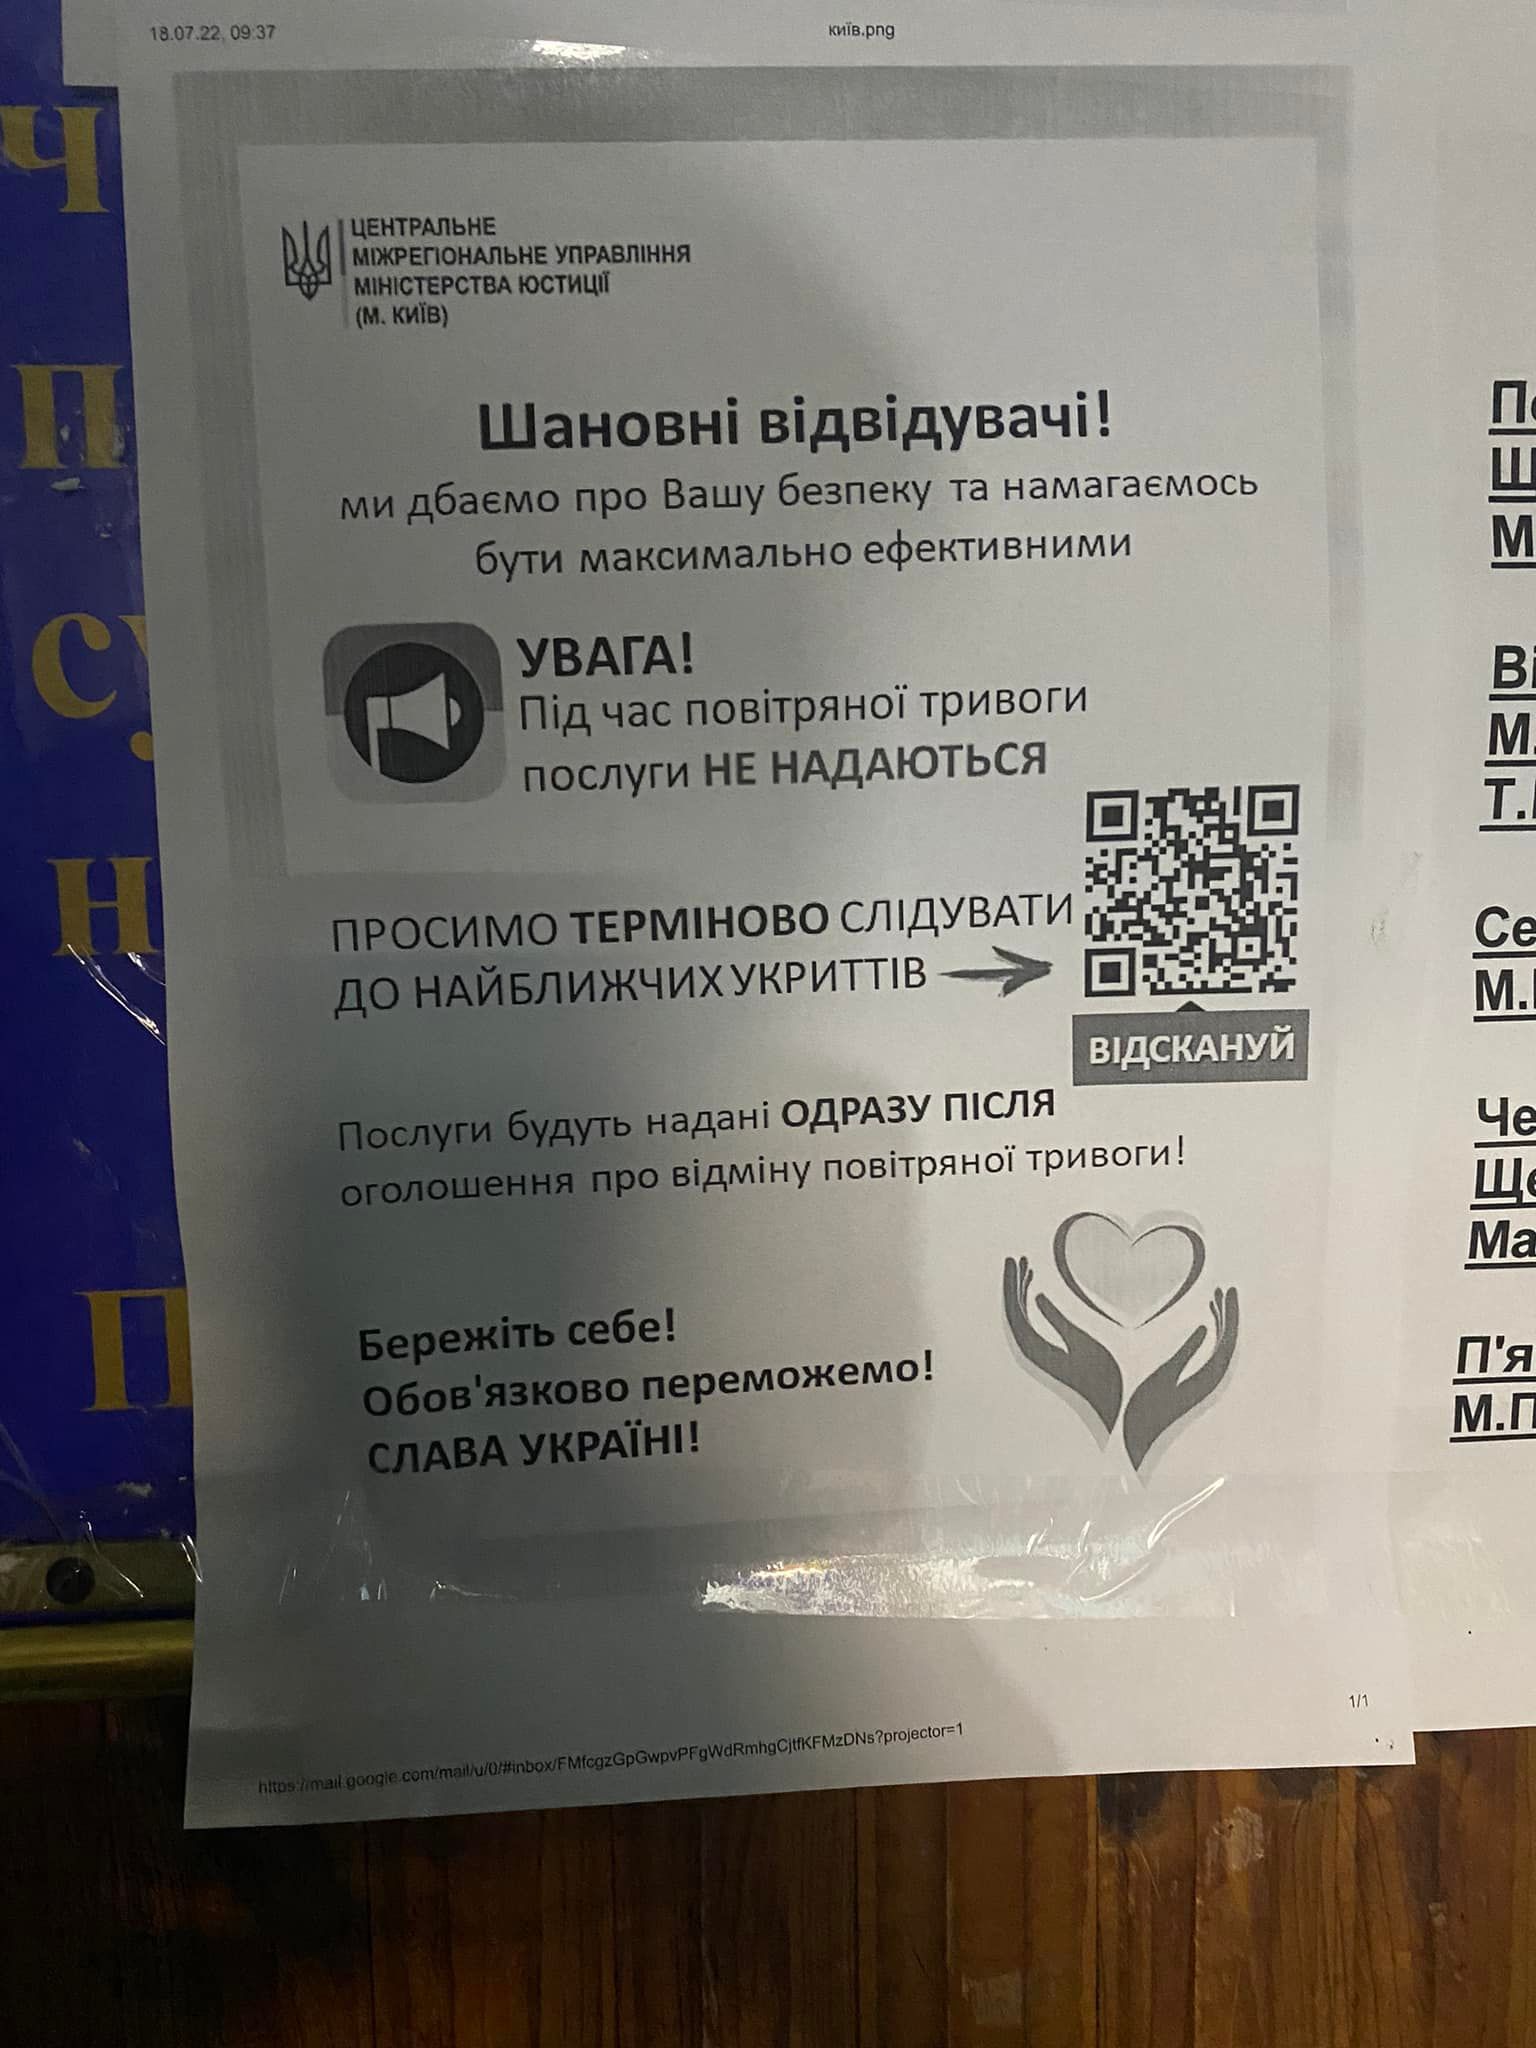 Объявление в государственном нотариате - только для владельцев смартфонов.  Фото: facebook.com/kupnovitskaya